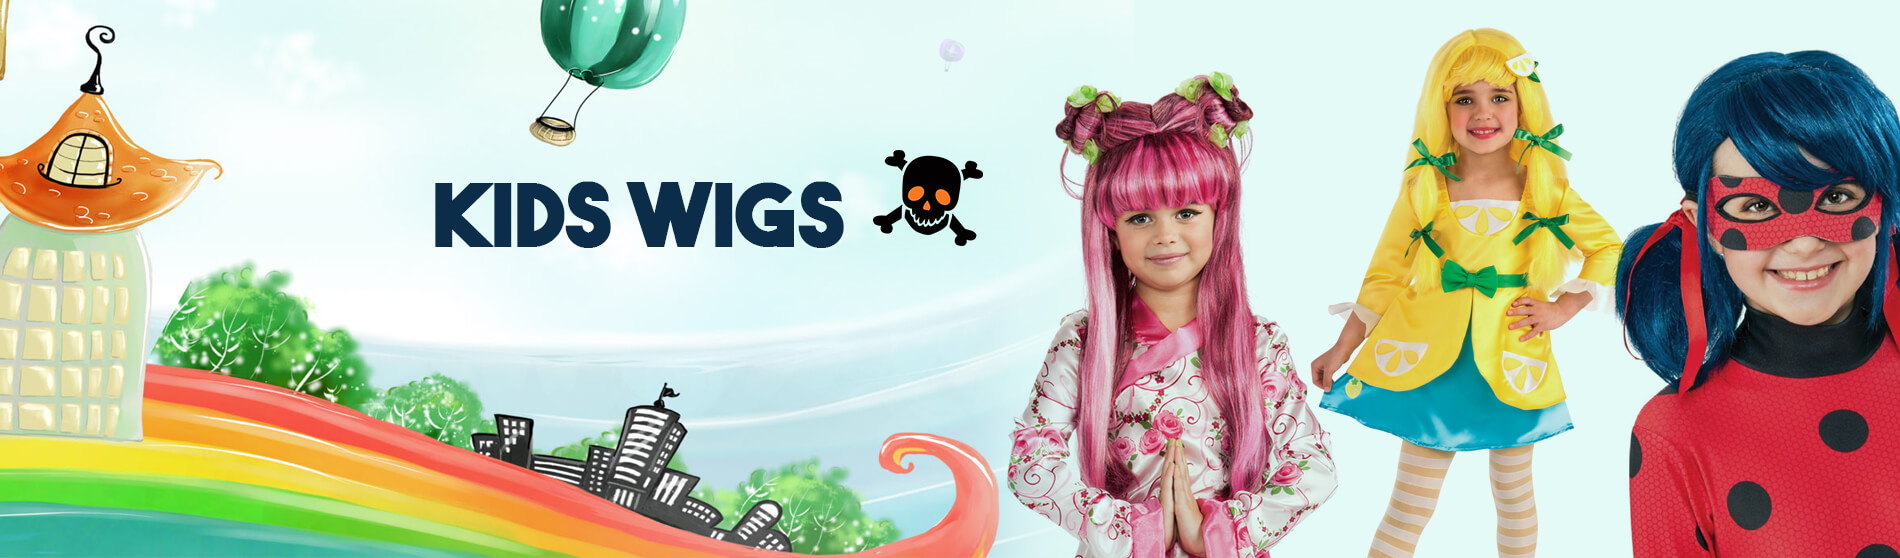 Glendale Halloween : Kids-Wigs